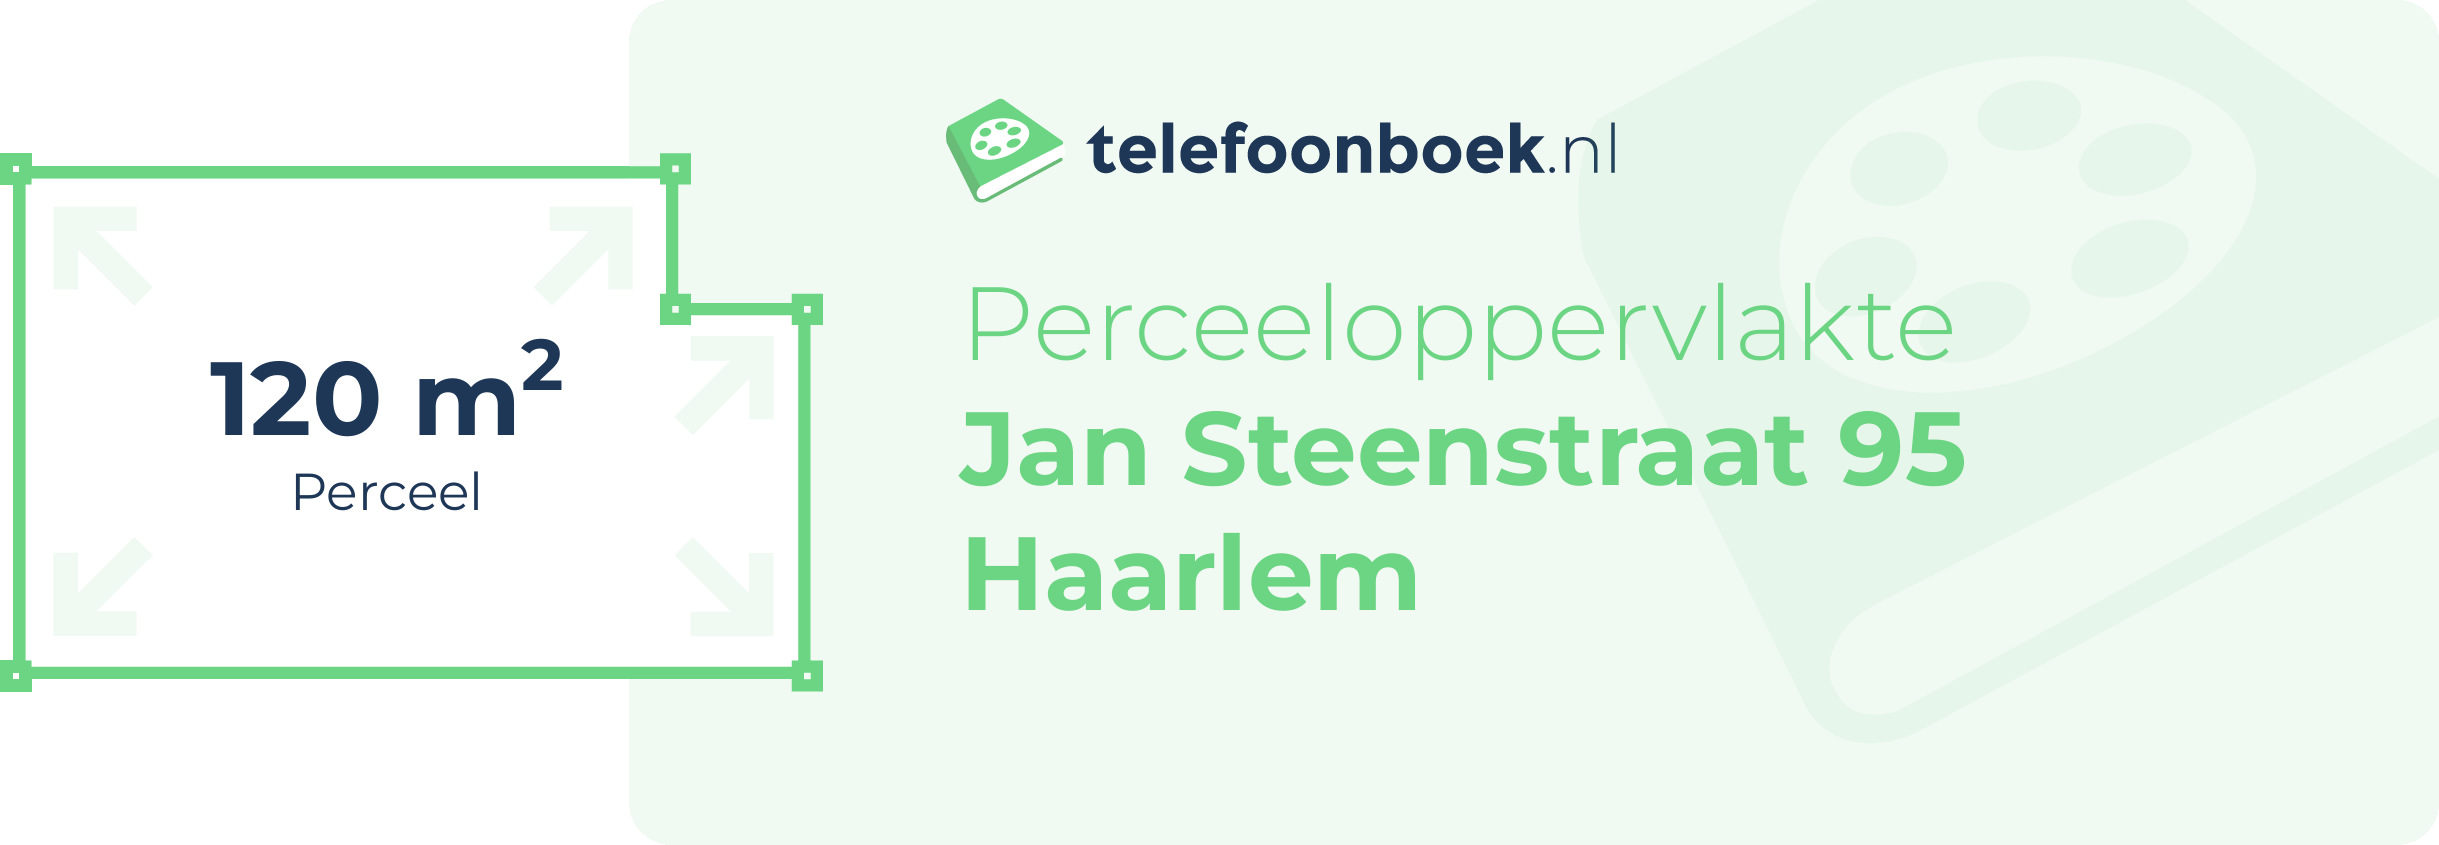 Perceeloppervlakte Jan Steenstraat 95 Haarlem